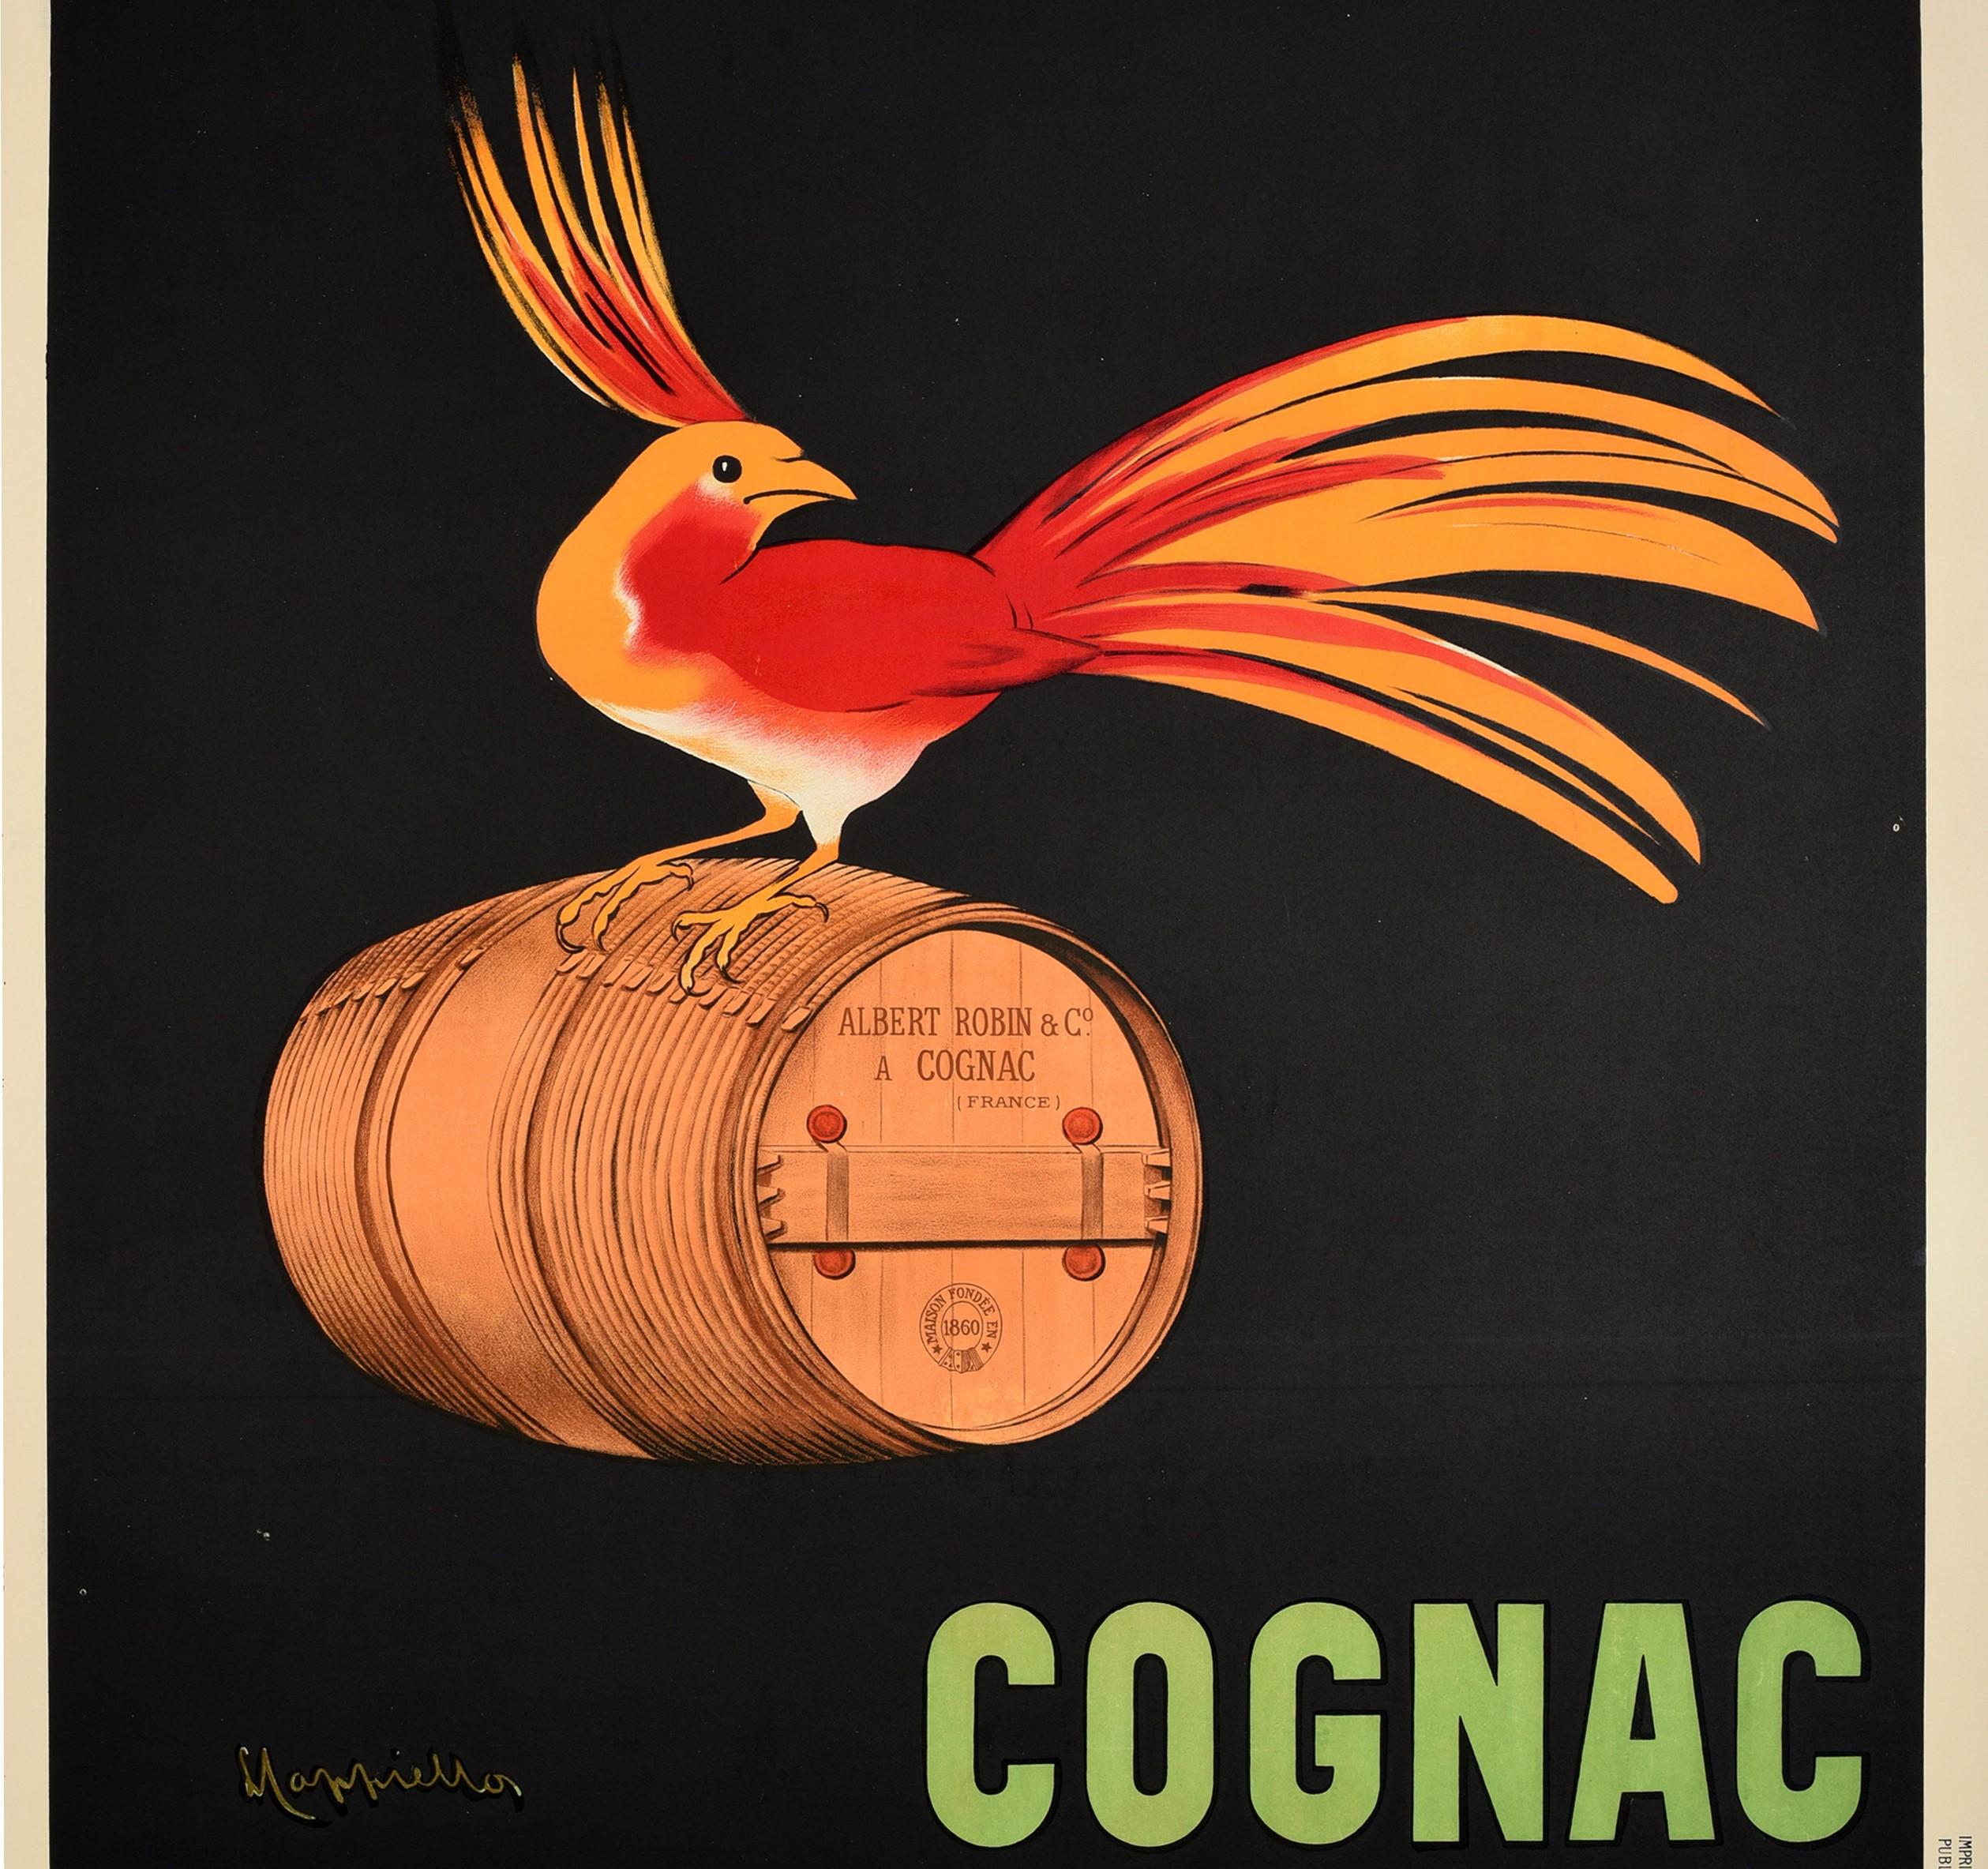 Originales antikes Getränke-Werbeplakat für Albert Robin Cognac mit einem atemberaubenden Entwurf des berühmten Plakatkünstlers Leonetto Cappiello (1875-1942), der einen farbenfrohen roten und orangefarbenen Vogel auf einem Holzfass von Albert Robin